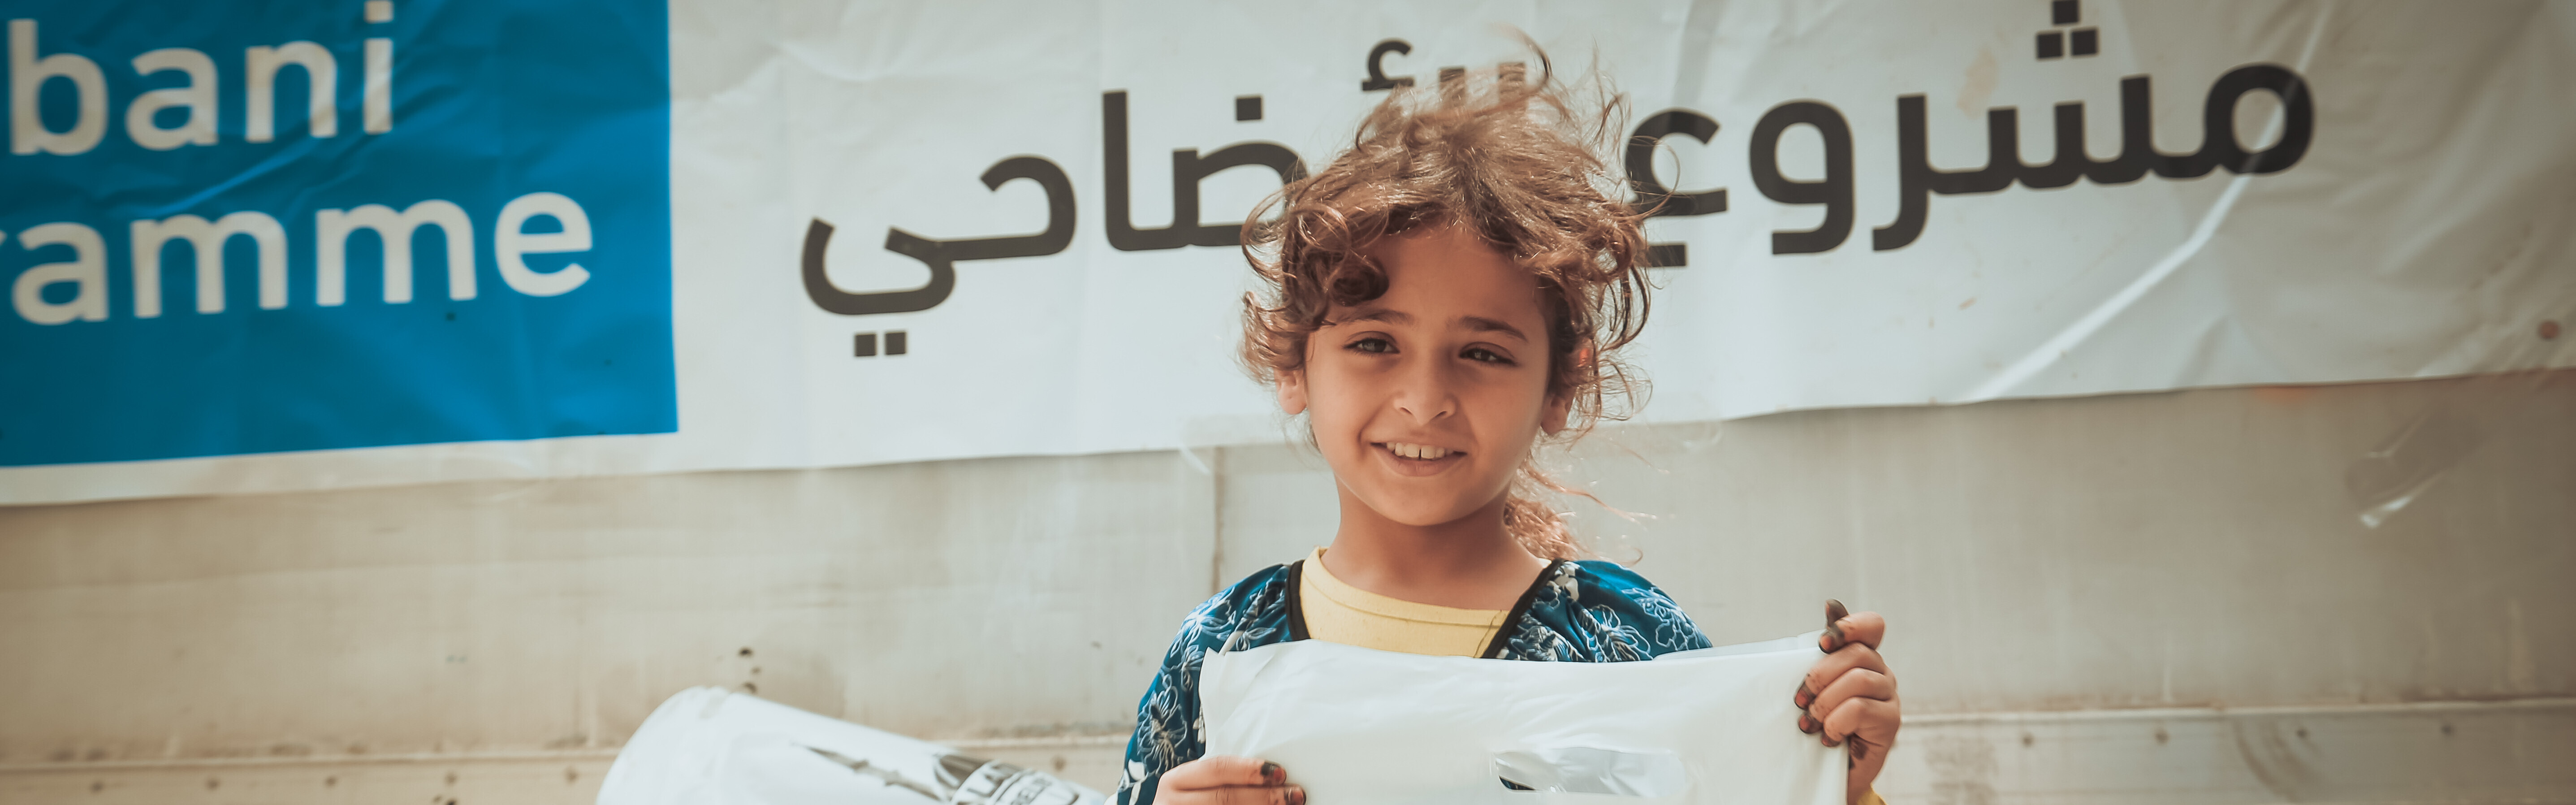 Ein Mädchen erhält Lebensmittel von Islamic Relief. Aufgrund der Hugnersnot im Jemen sterben täglich Menschen.